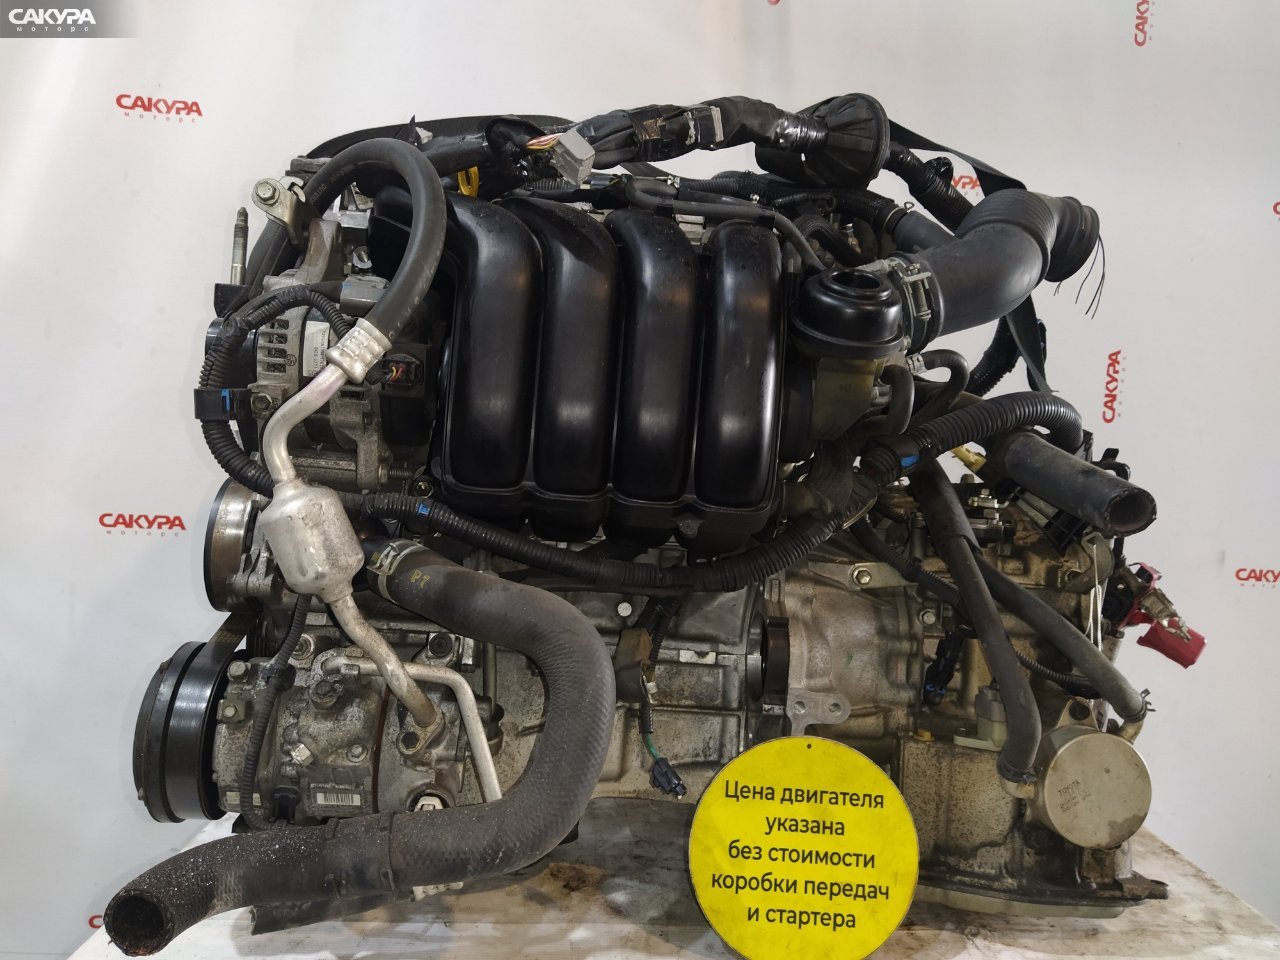 Двигатель Toyota Isis ZGM10G 2ZR-FAE: купить в Сакура Красноярск.